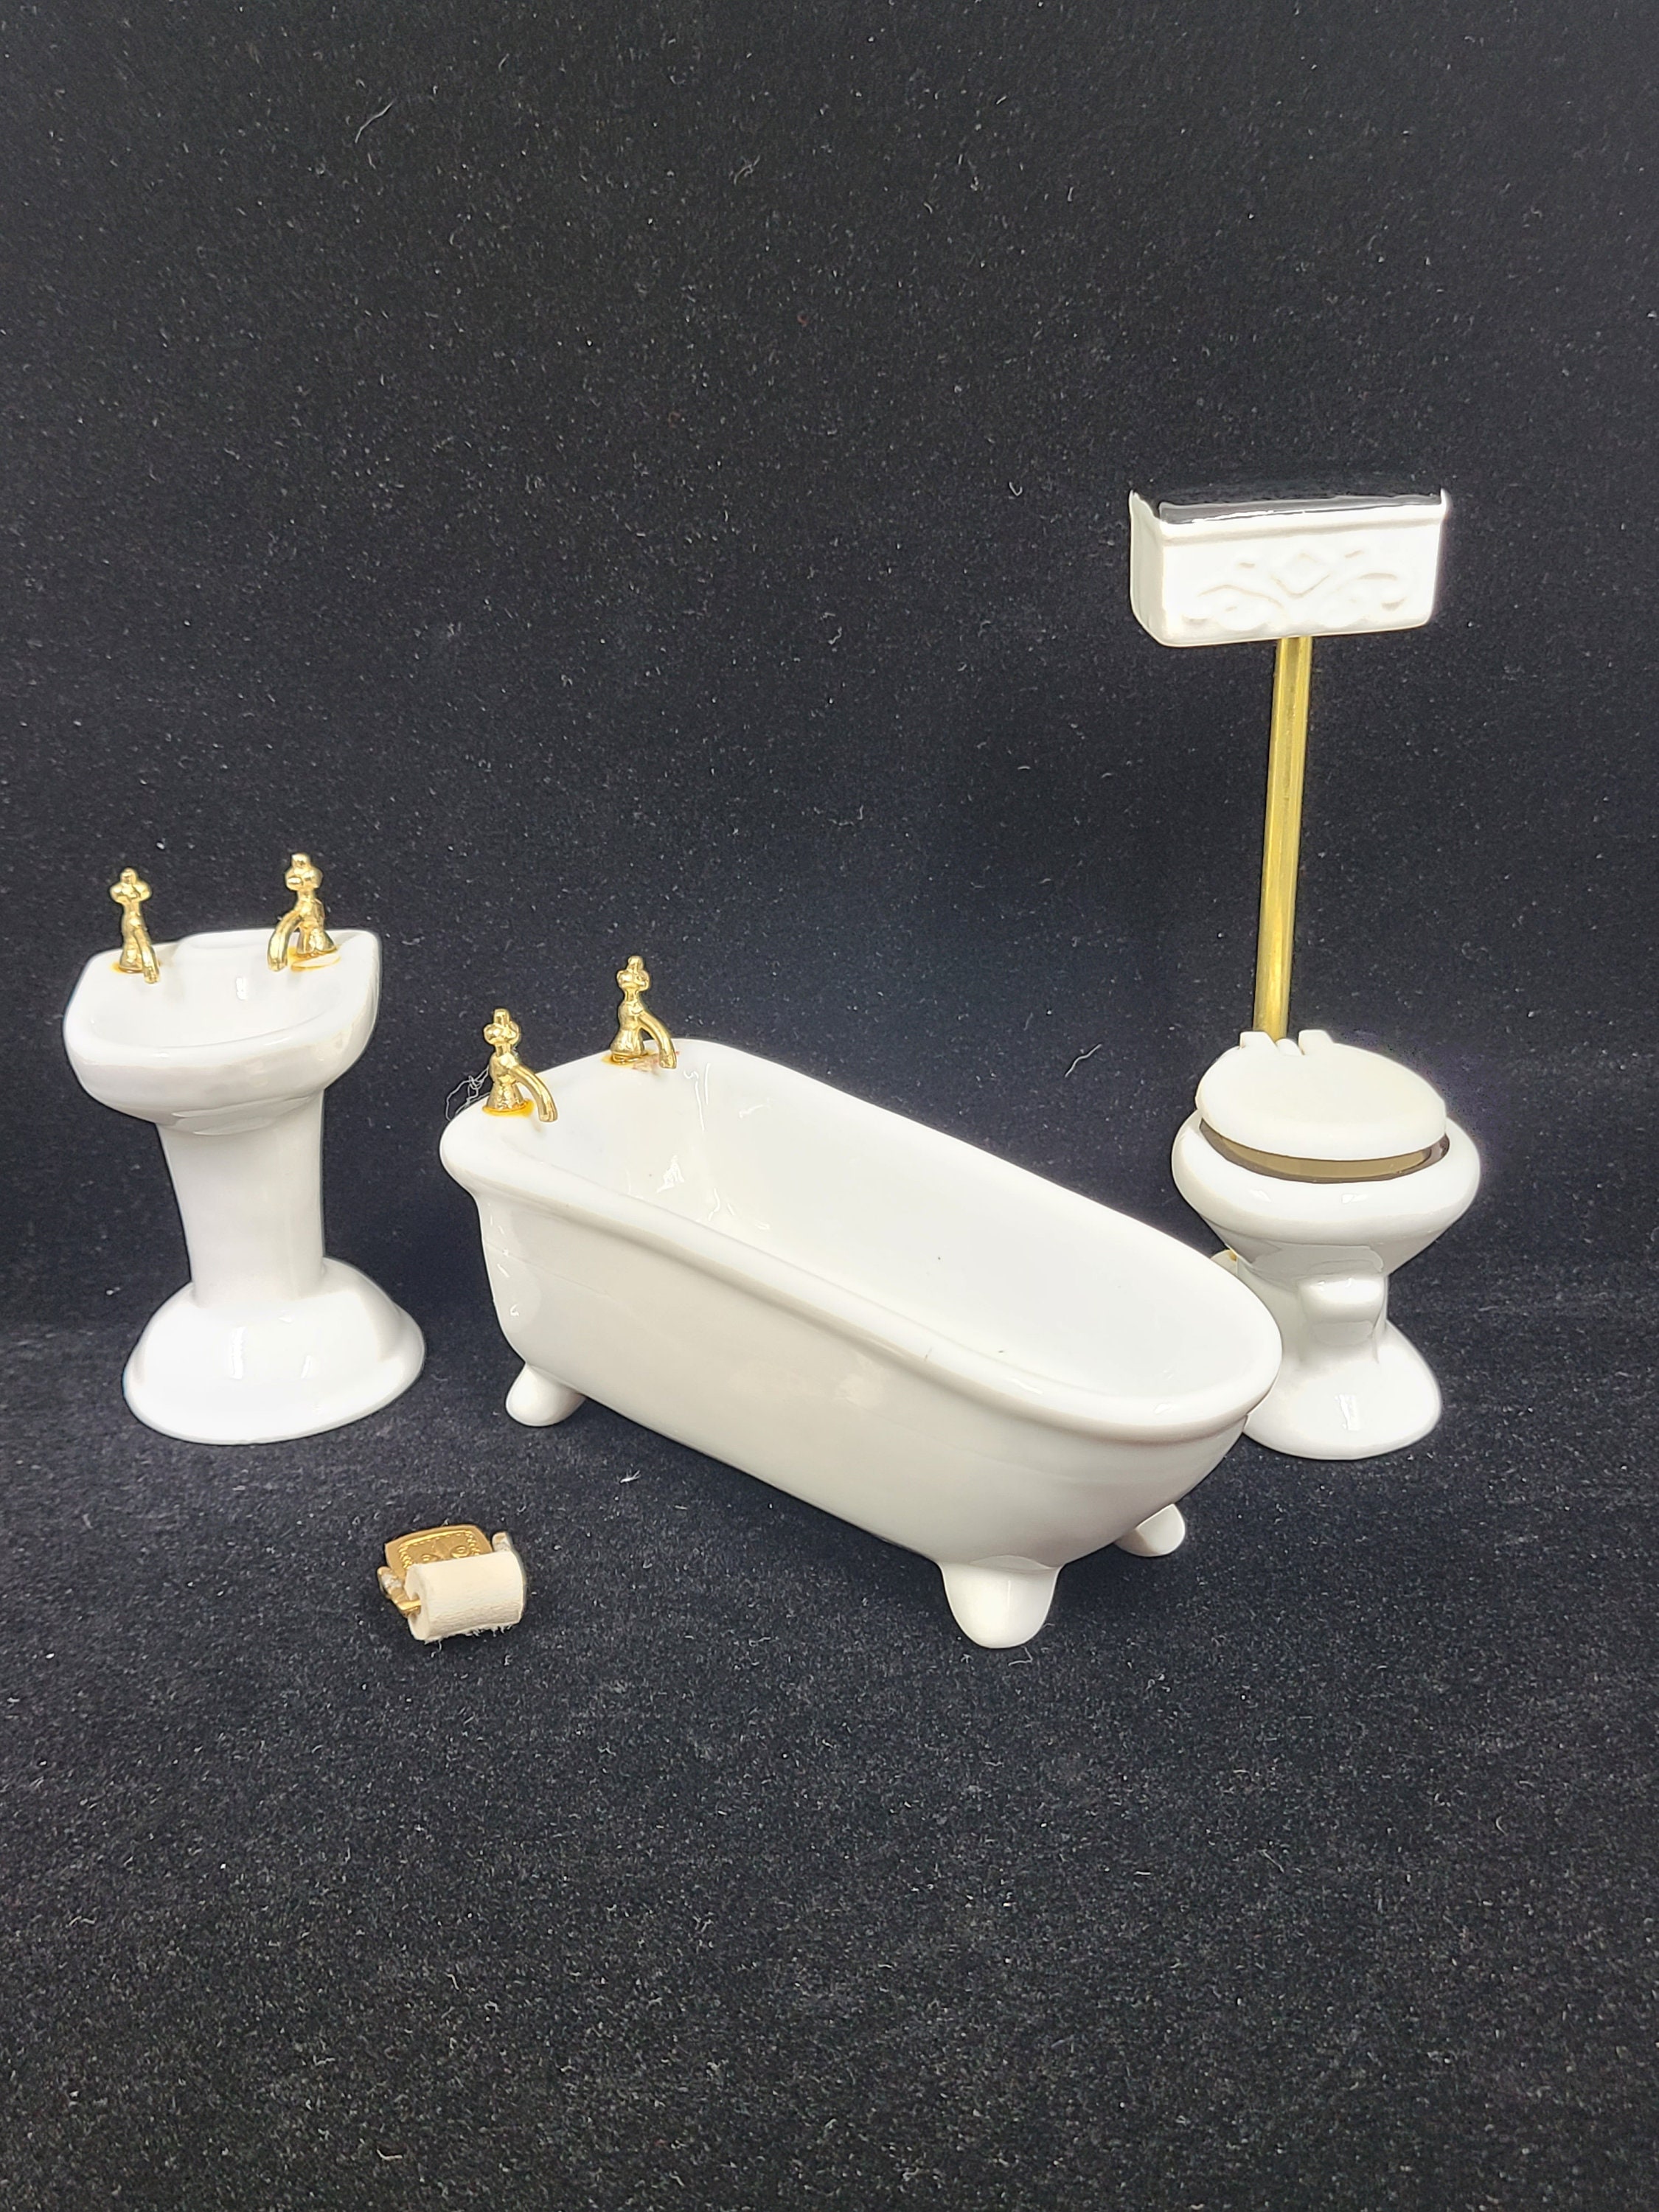 1/24 Miniatur Badezimmer Keramik Badewanne Toilette Puppenhaus Zubehör Weiß 